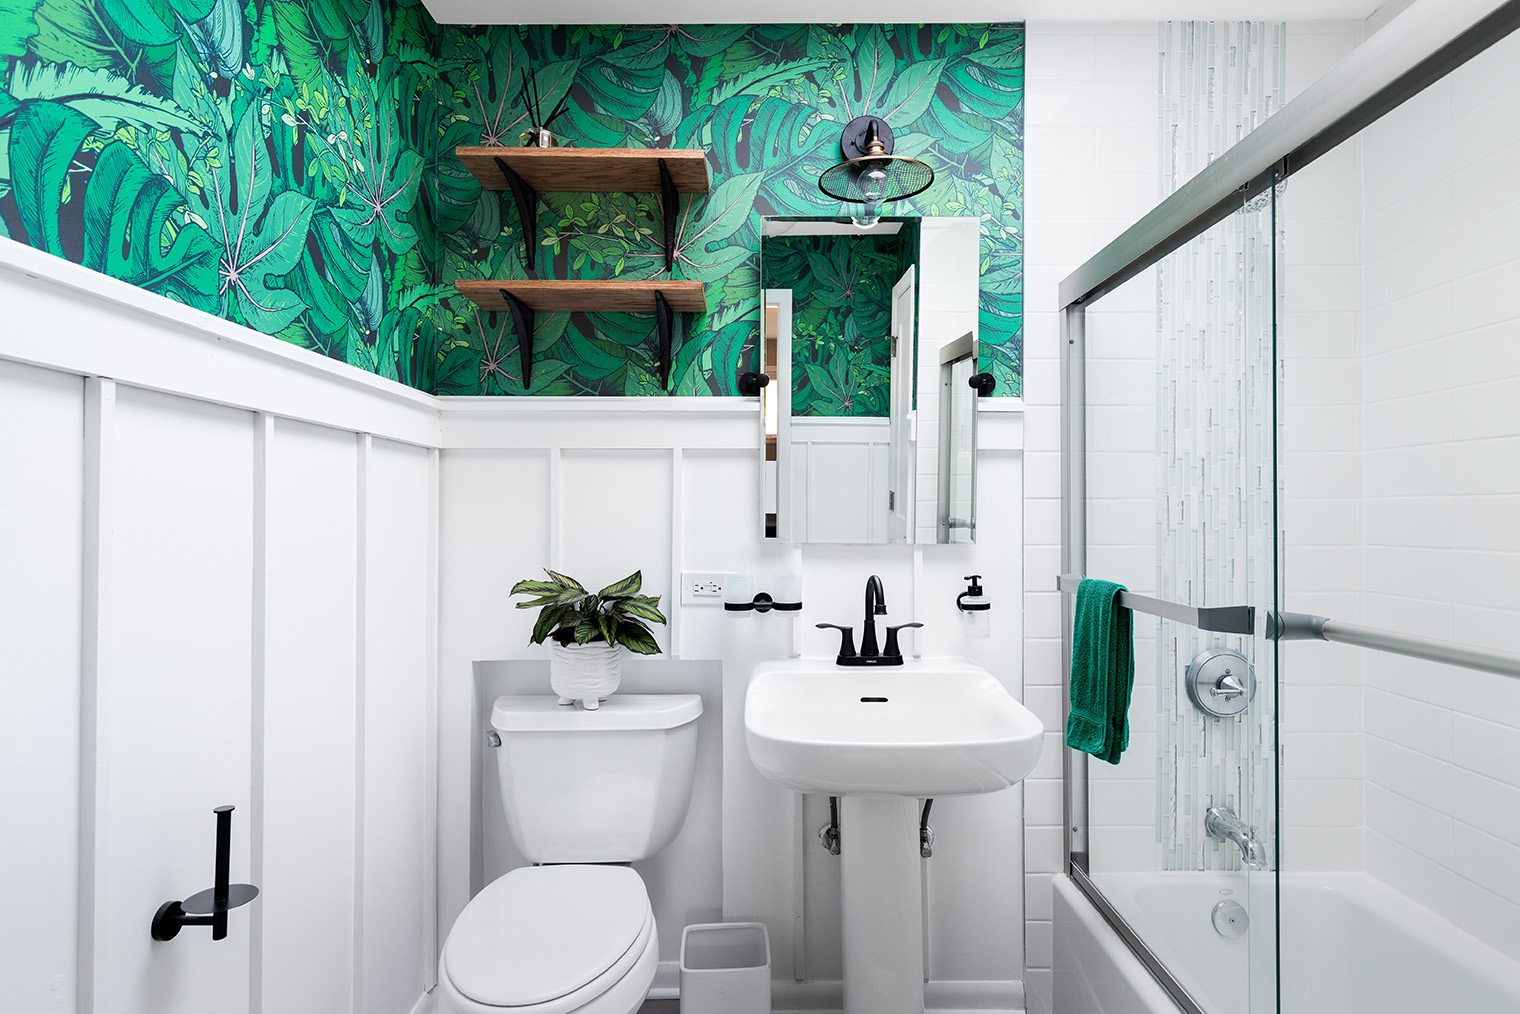 Добавить яркого цвета и рисунков в ванную можно за счет водостойких обоев, а не плитки с рисунками. Фотография: Joseph Hendrickson / Shutterstock / FOTODOM